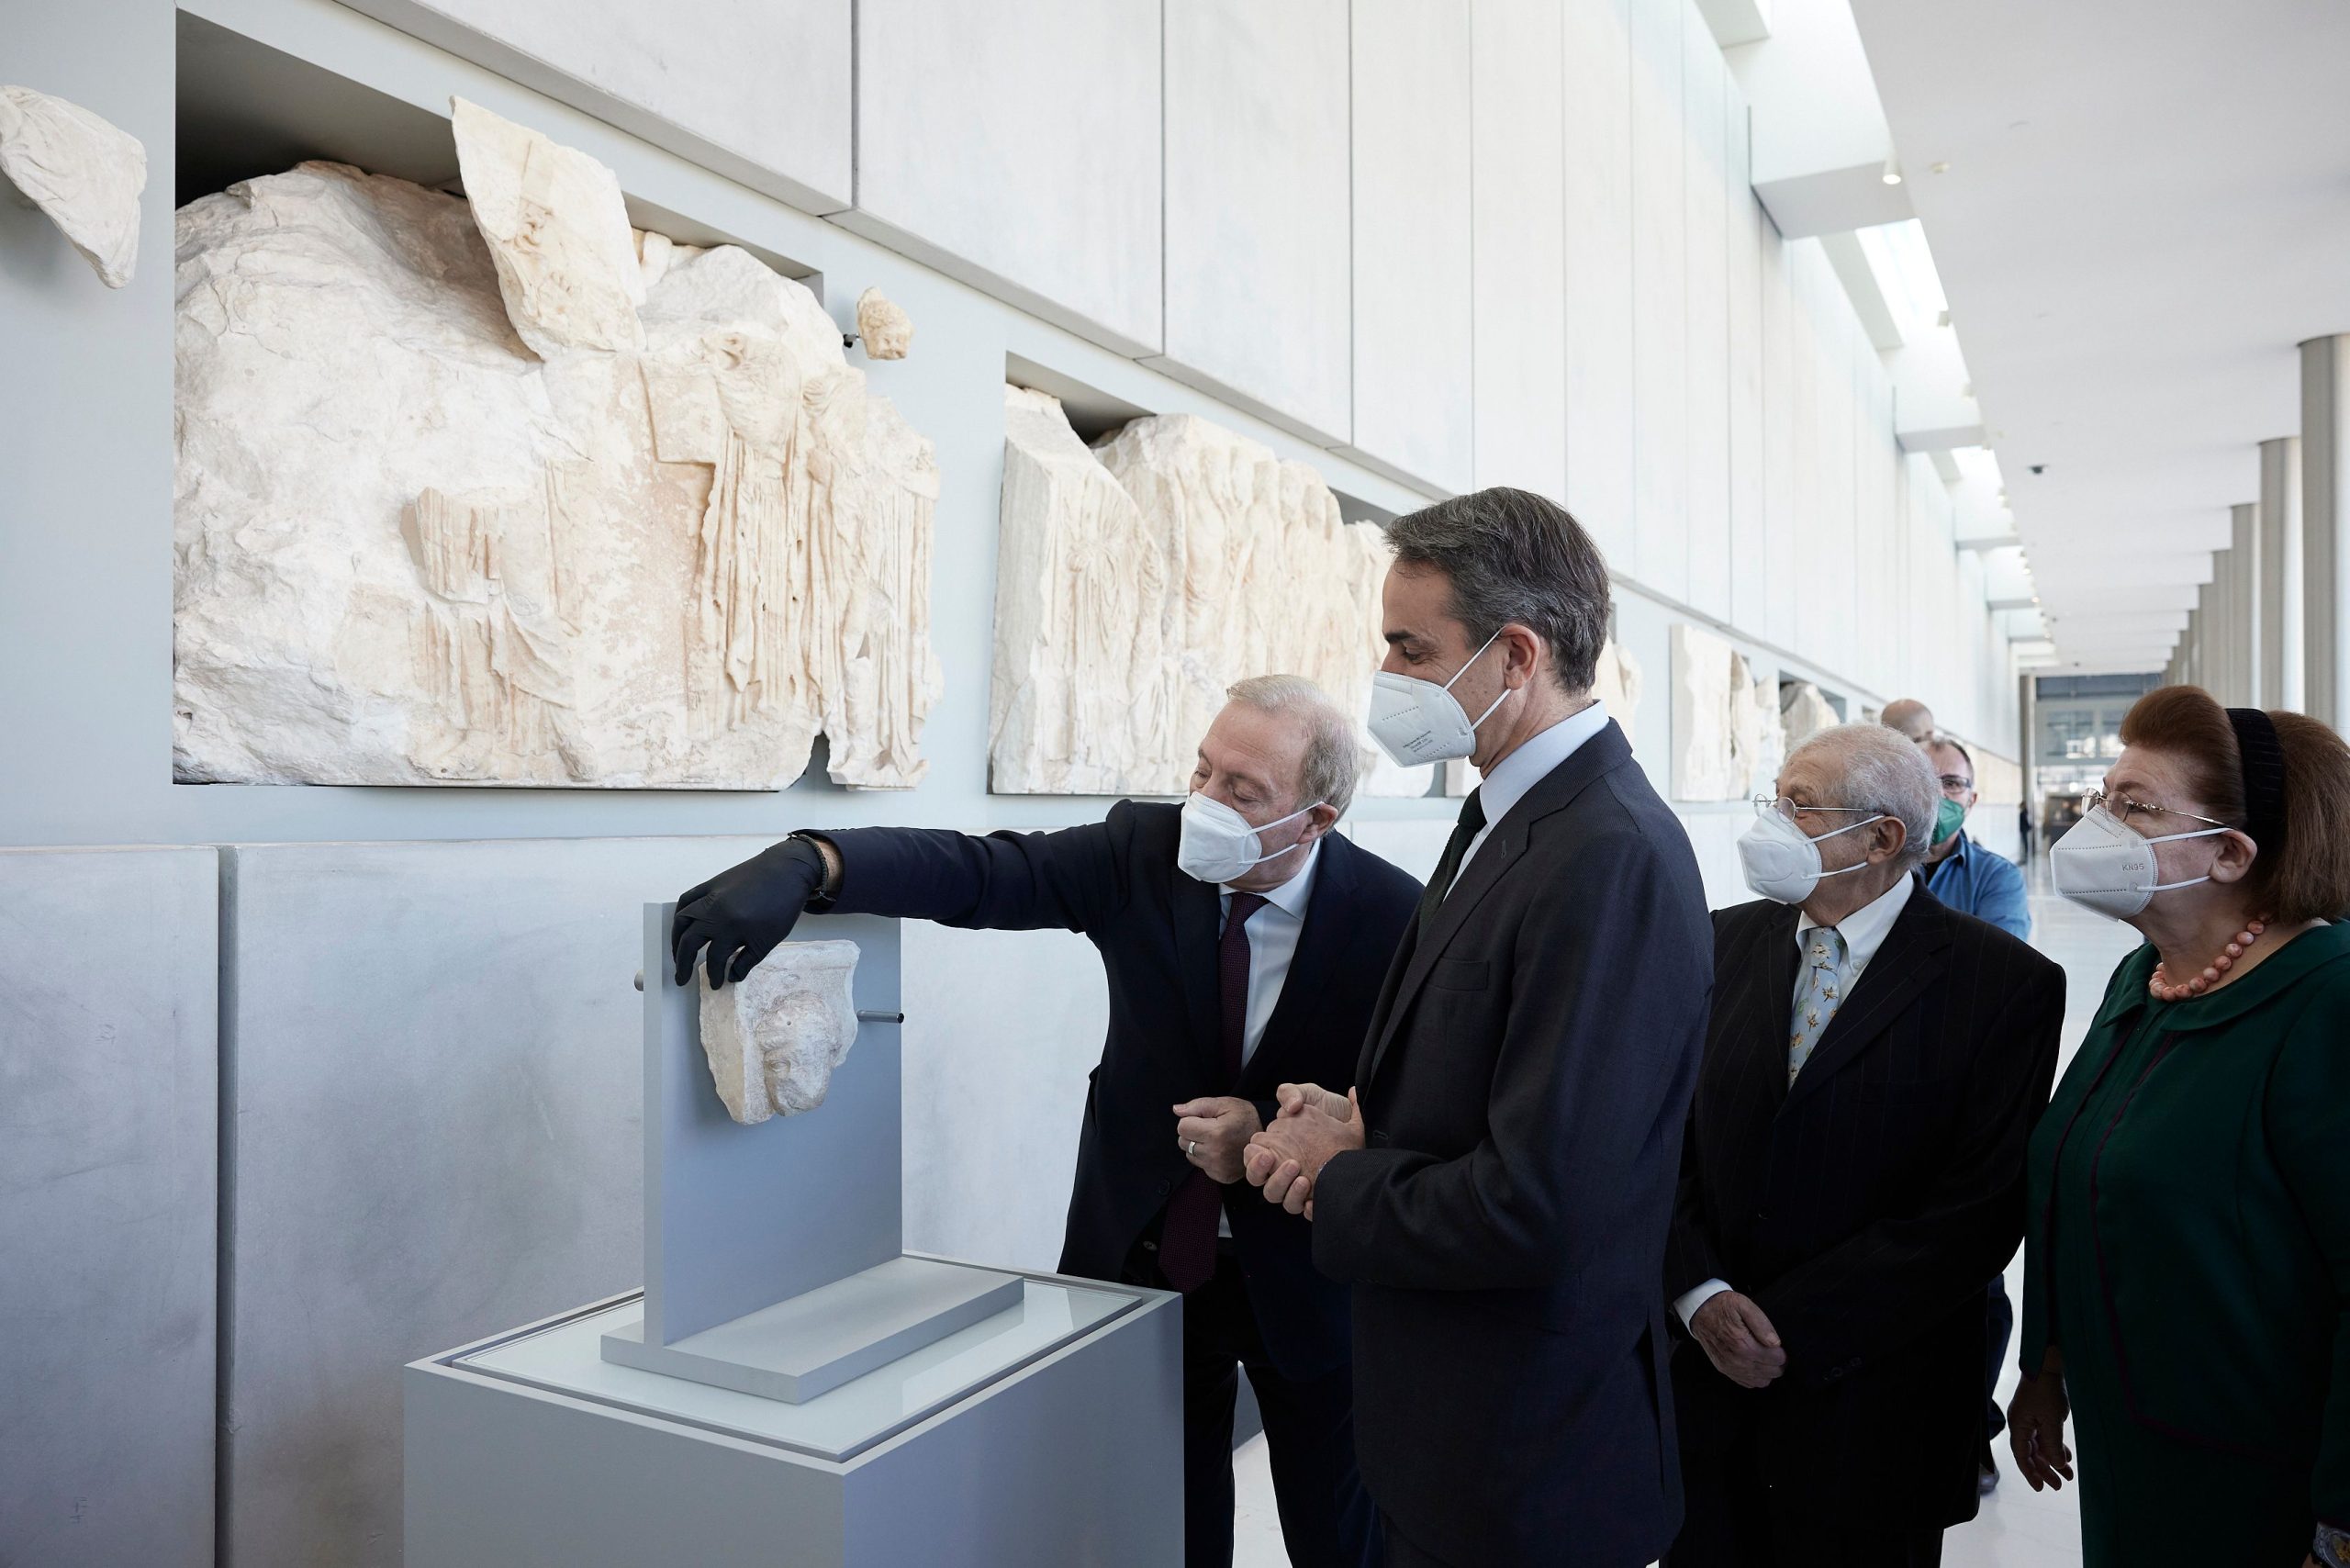 Η επανένωση του θραύσματος «Fagan» στο Μουσείο Ακρόπολης παρουσία του πρωθυπουργού Κυριάκου Μητσοτάκη, της υπουργού Πολιτισμού Λίνας Μενδώνη, του διευθυντή Μουσείου Ακρόπολης Νίκου Σταμπολίδη και του Δημήτρη Παντερμαλή